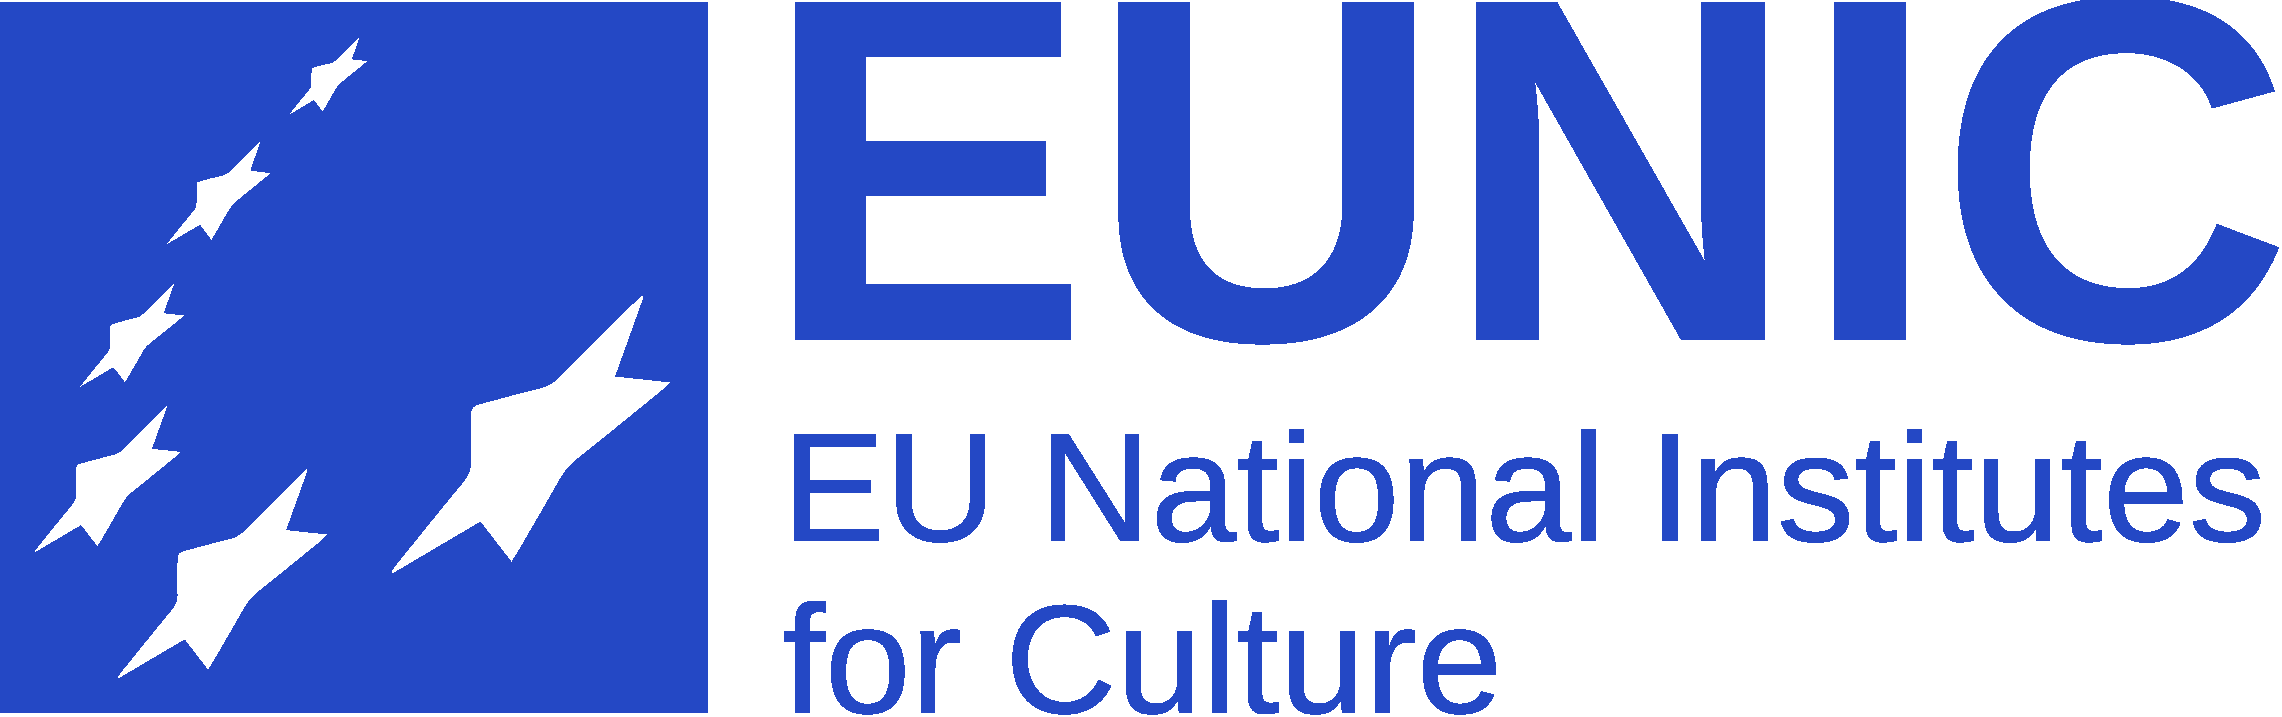 EUNIC - European National Institutes for Culture